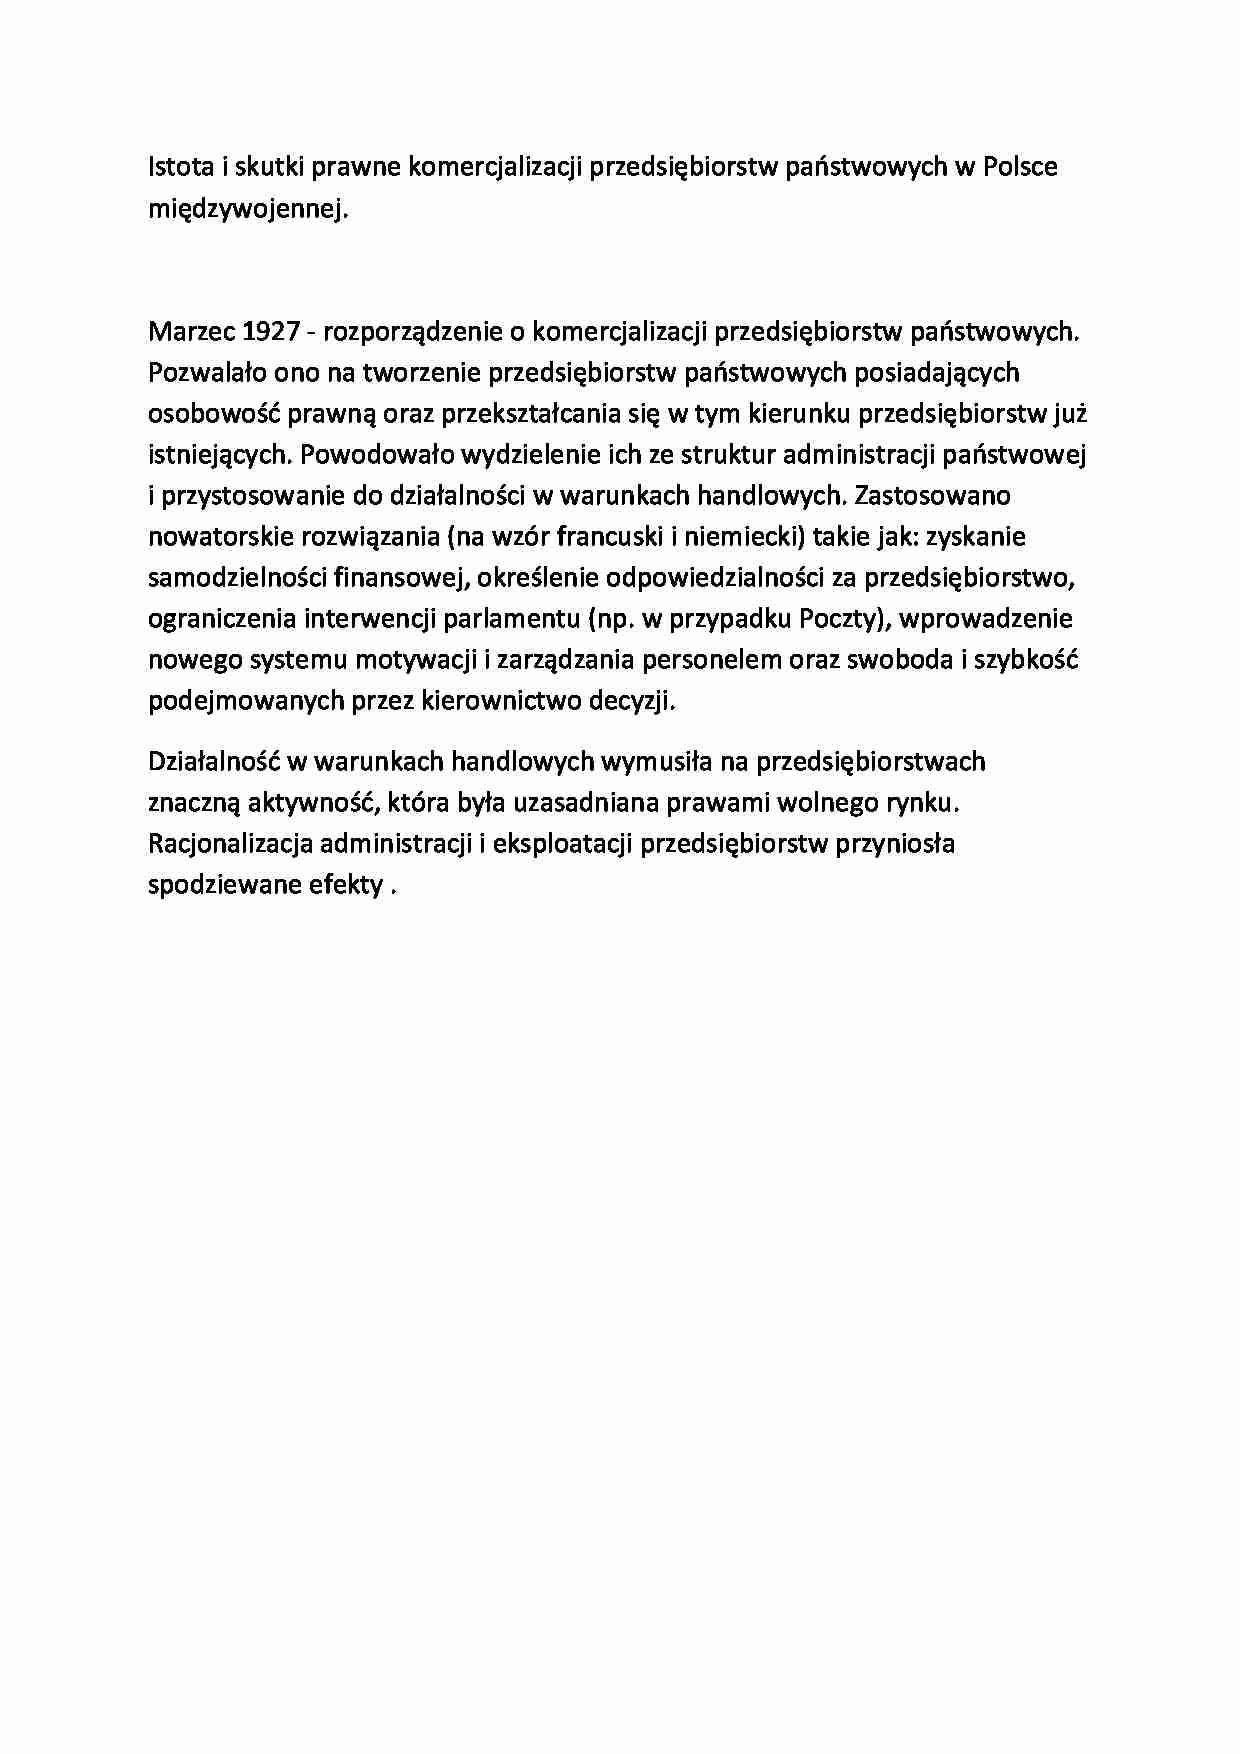 Istota i skutki prawne komercjalizacji przedsiębiorstw państwowych w Polsce międzywojennej-opracowanie - strona 1